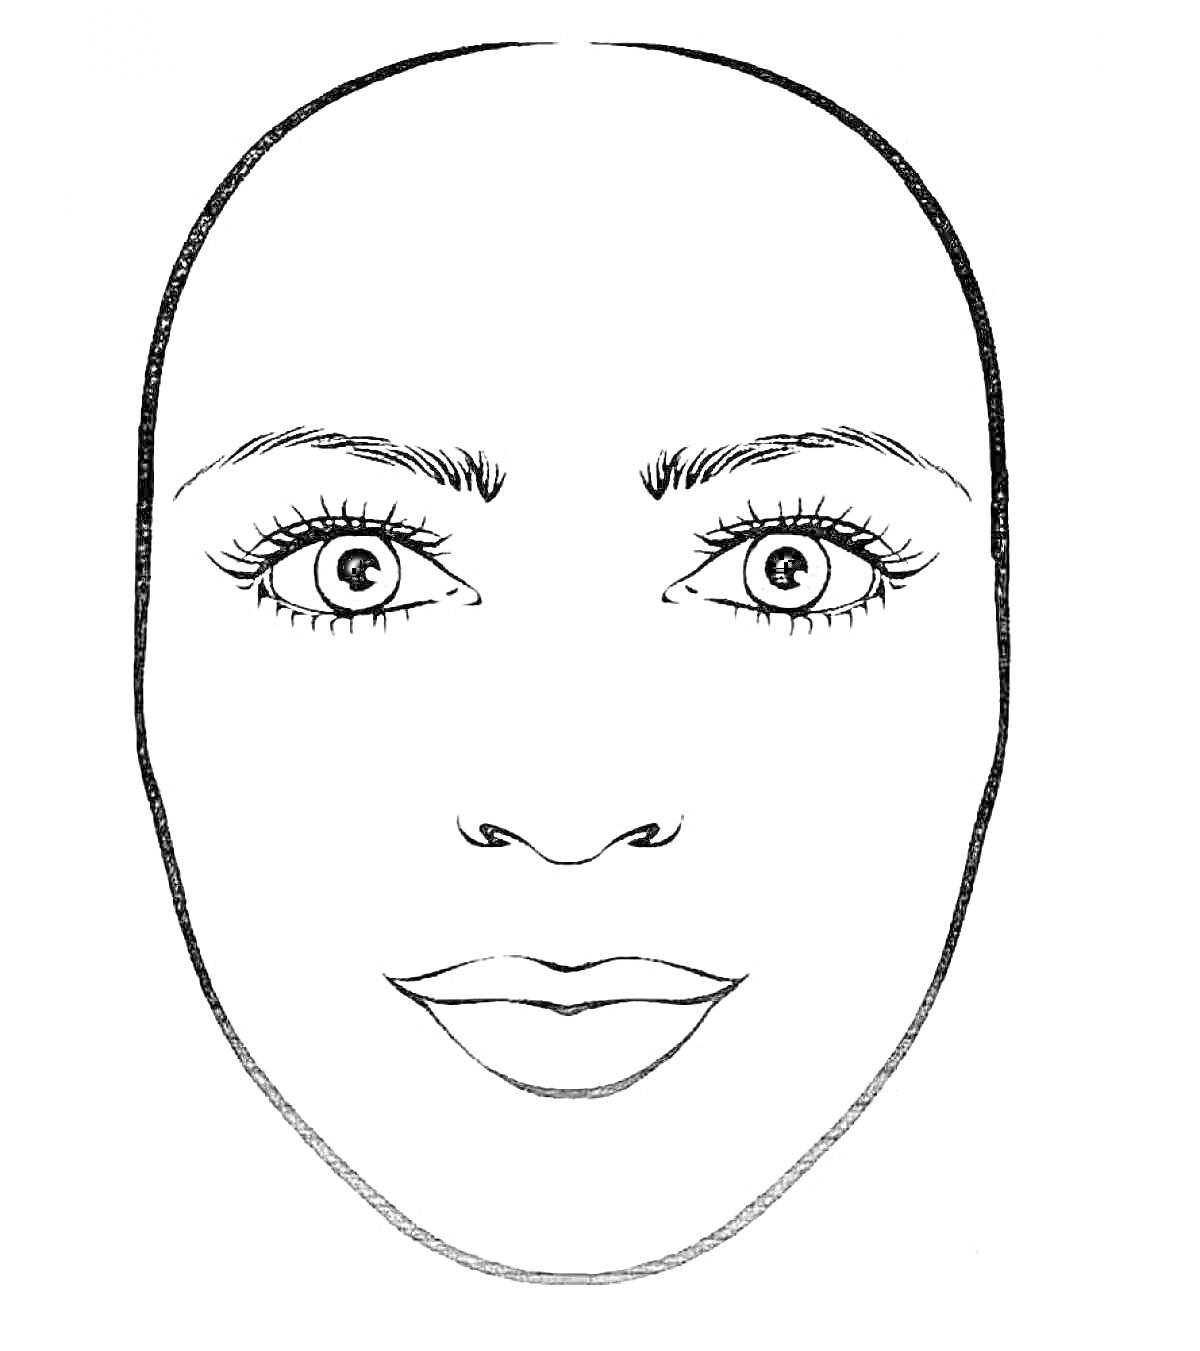 Контур лица с макияжем: глаза, брови, ресницы и губы